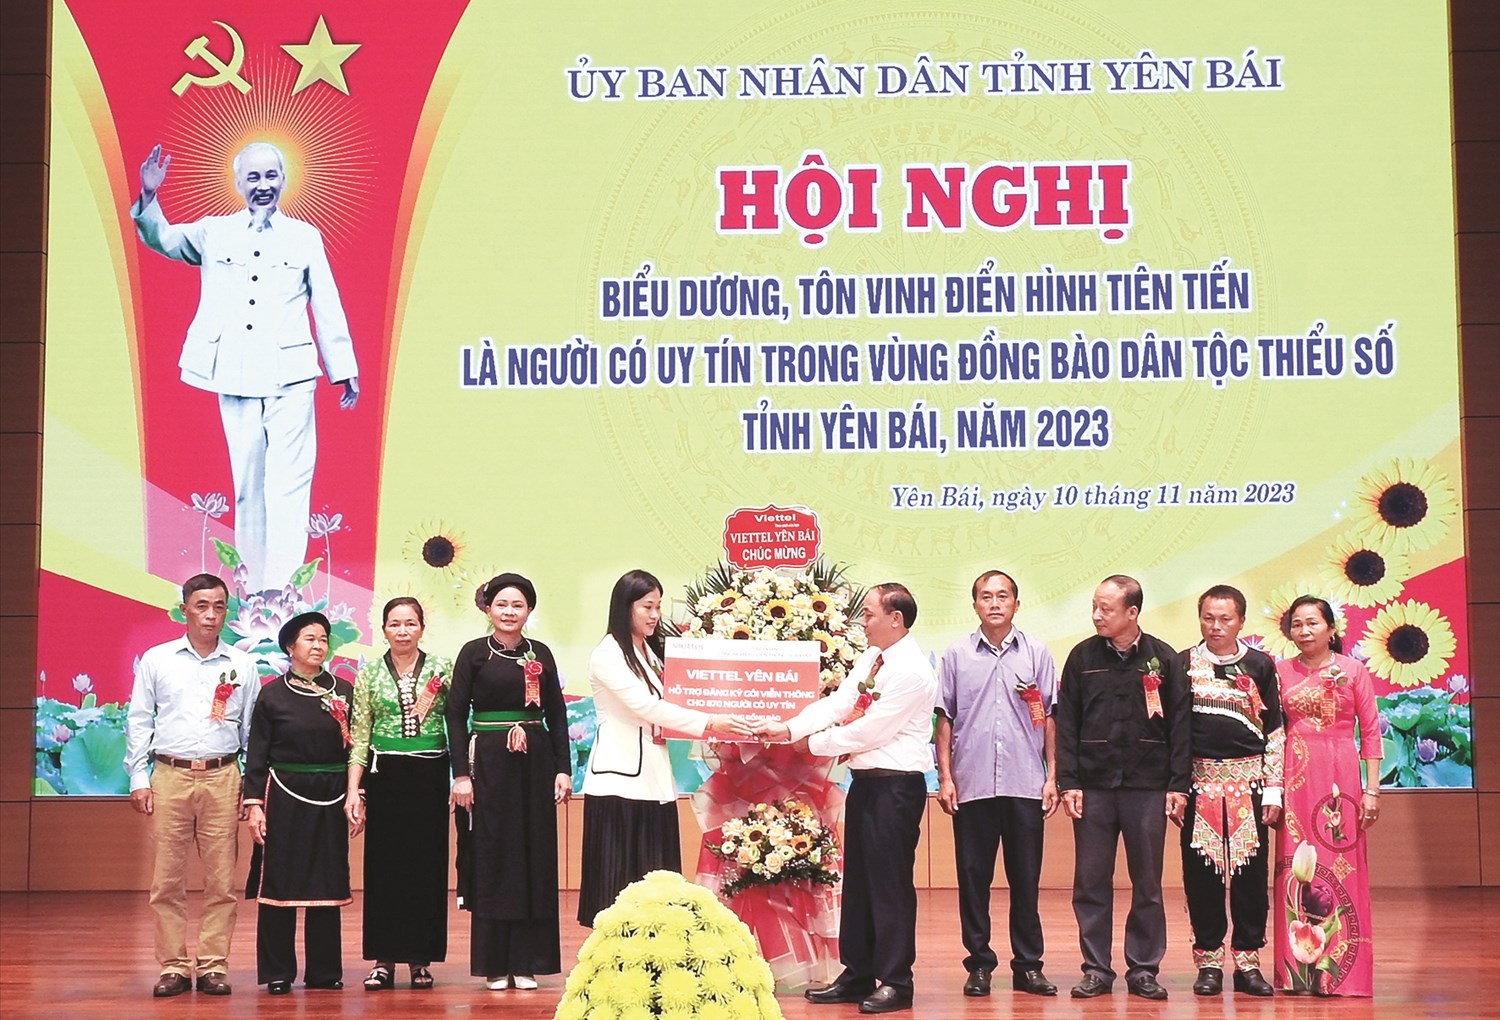 Viettel Yên Bái phối hợp với Ban Dân tộc tỉnh hỗ trợ gói cước viễn thông cho Người có uy tín trên địa bàn tỉnh Yên Bái